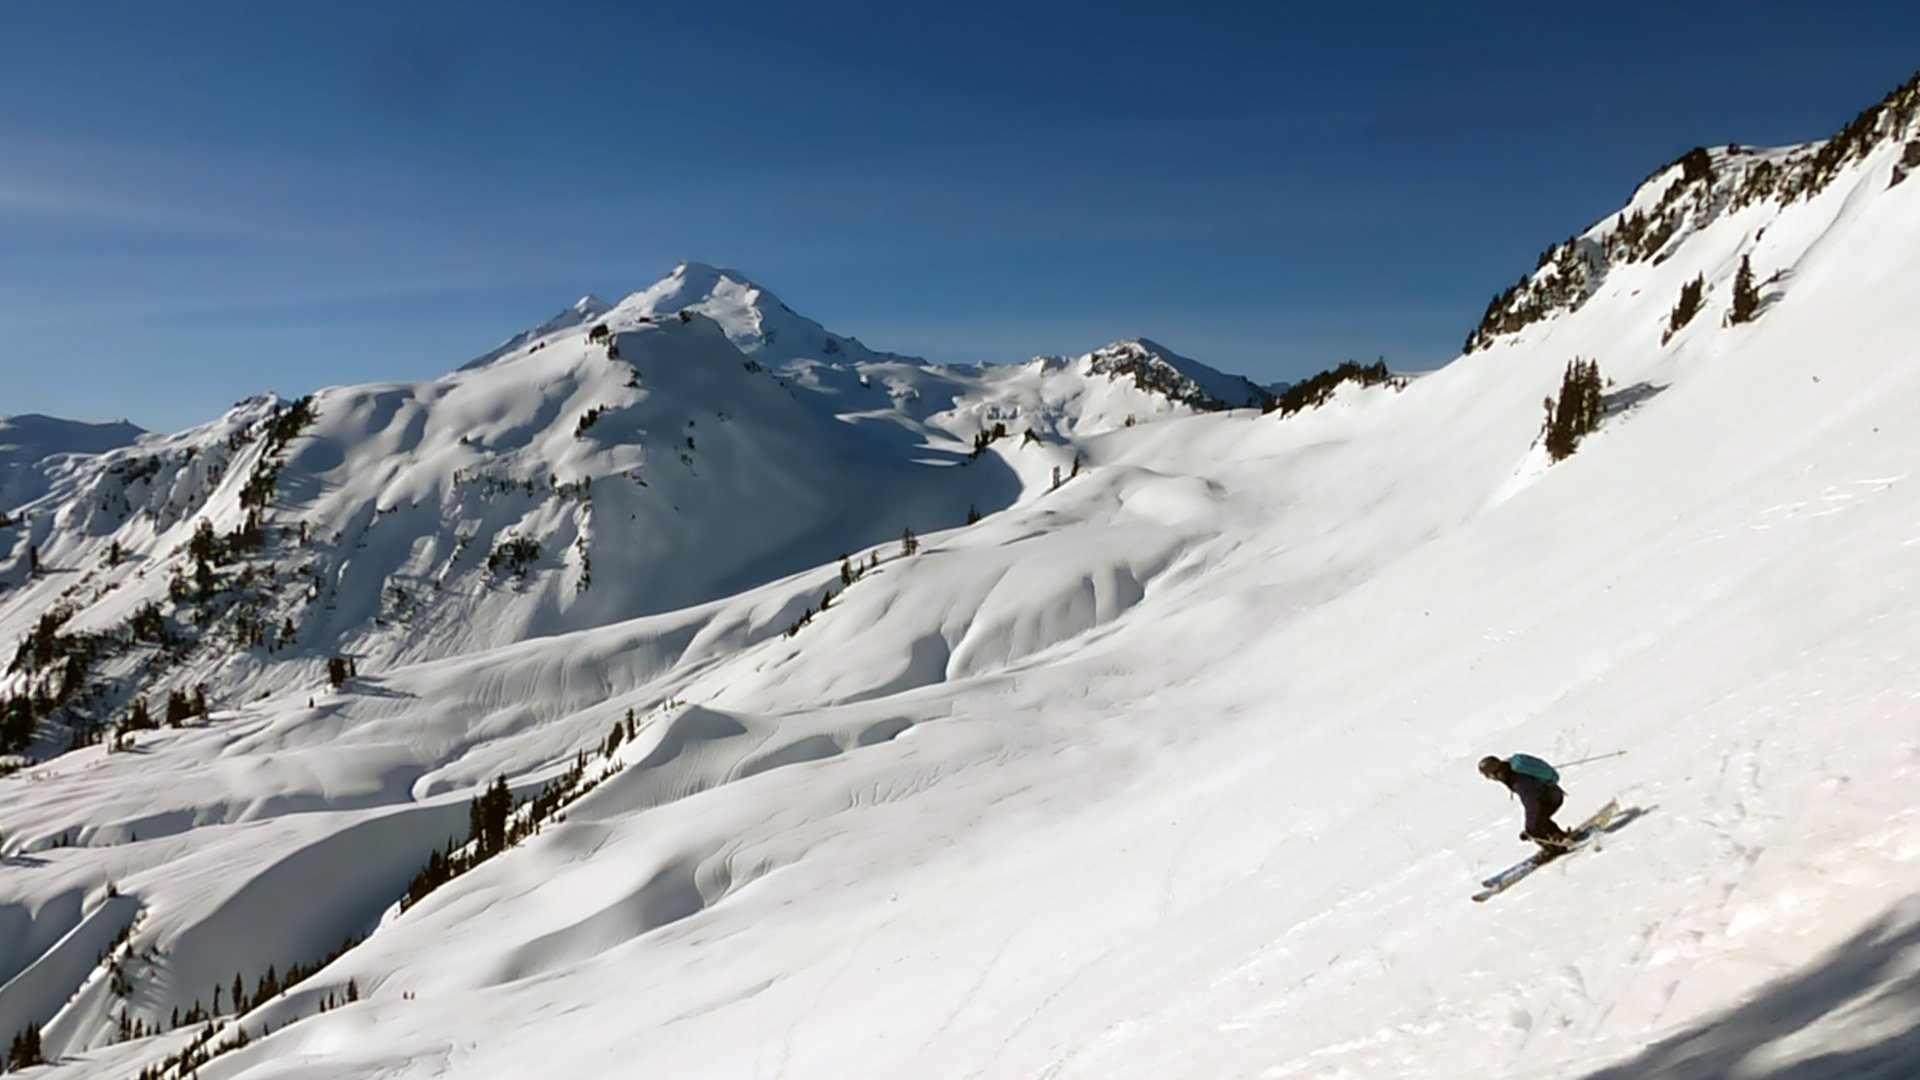 SKIING winter snow ski mountains wallpaper 1920x1080 536260